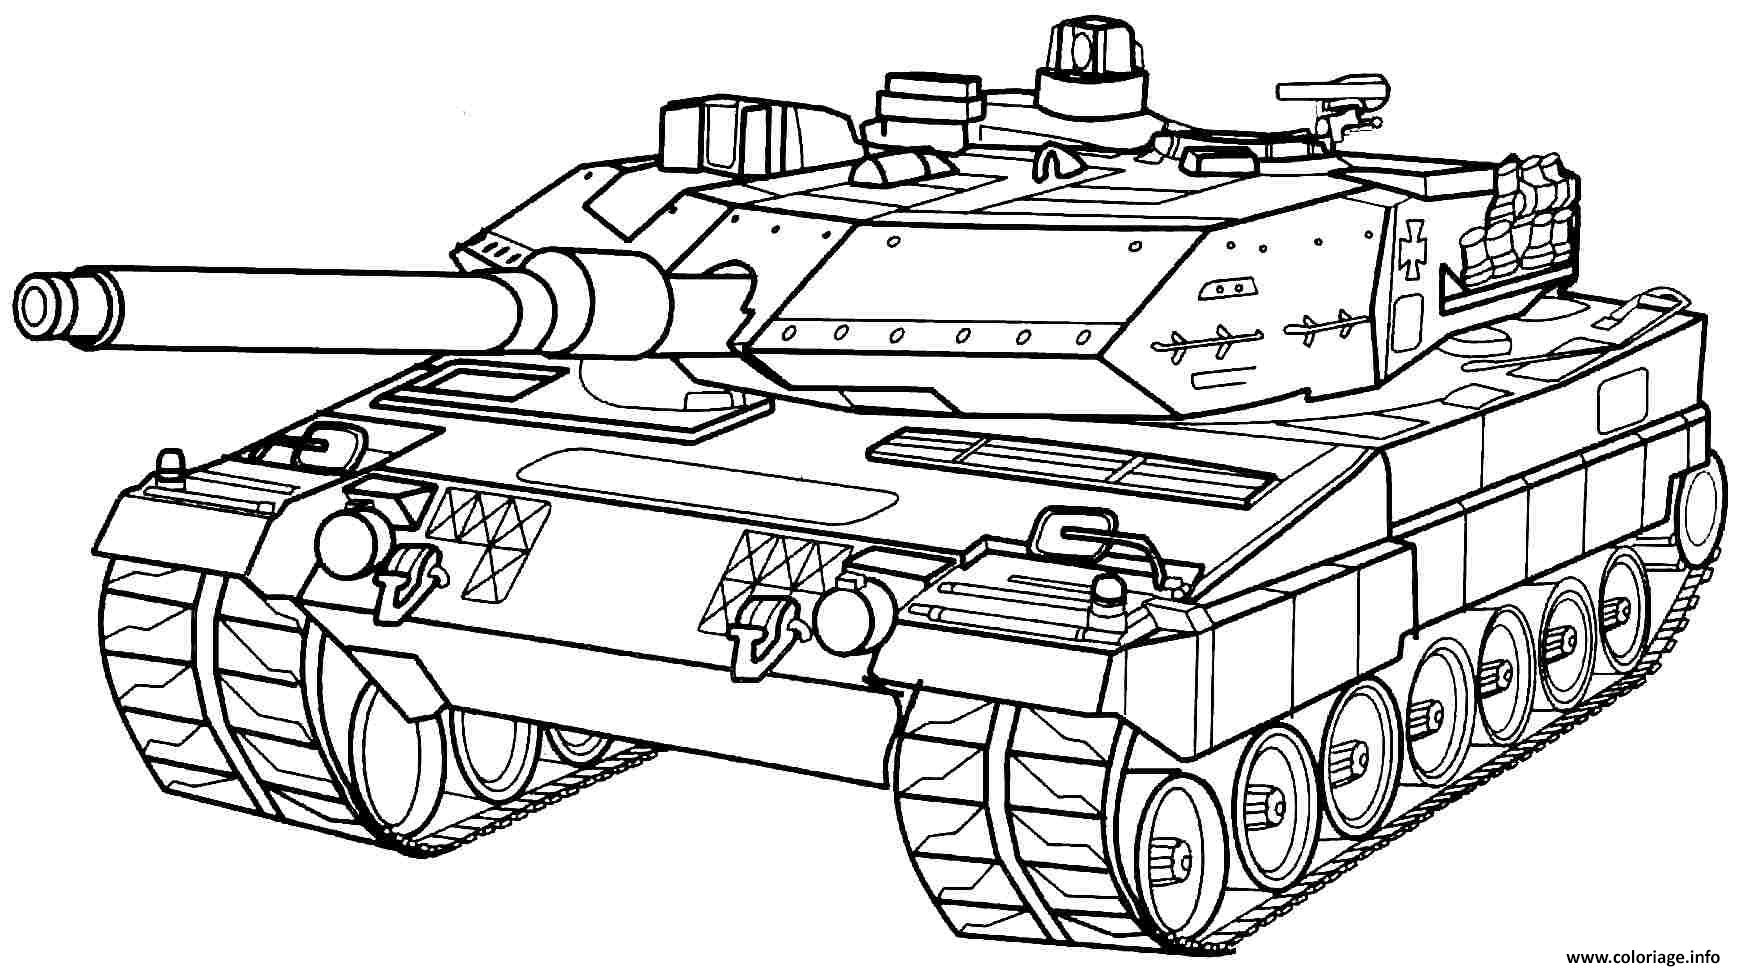 Coloriage Tank Char Dassault De Larmee Dessin Militaire À Imprimer avec Coloriage Militaire